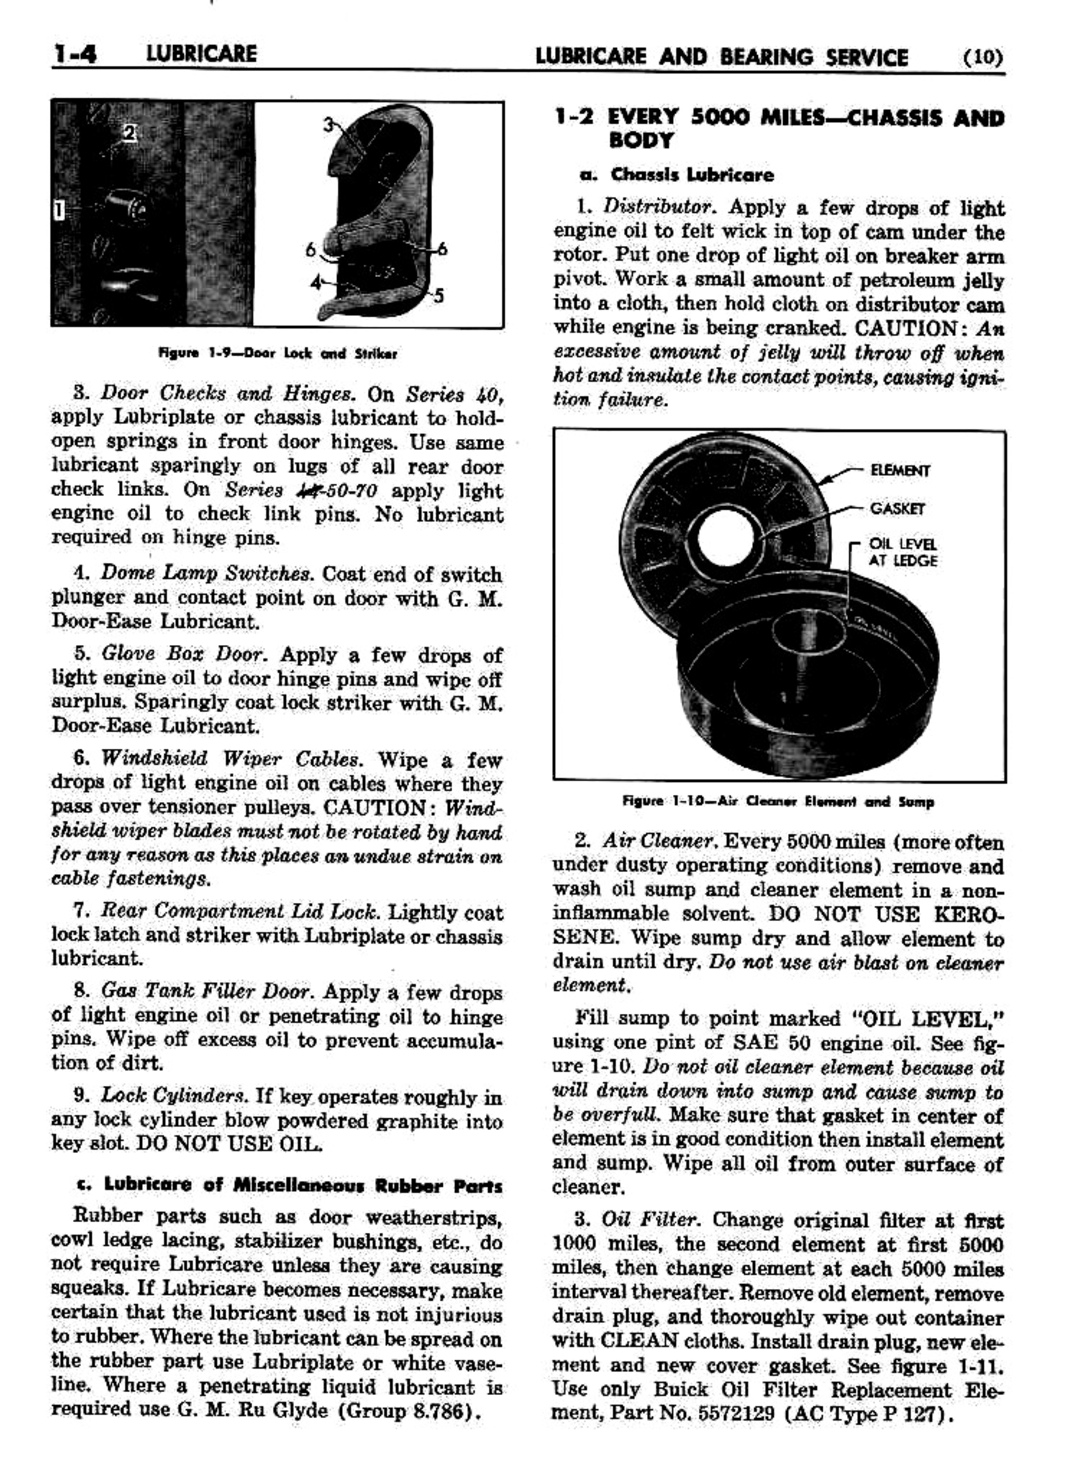 n_02 1951 Buick Shop Manual - Lubricare-004-004.jpg